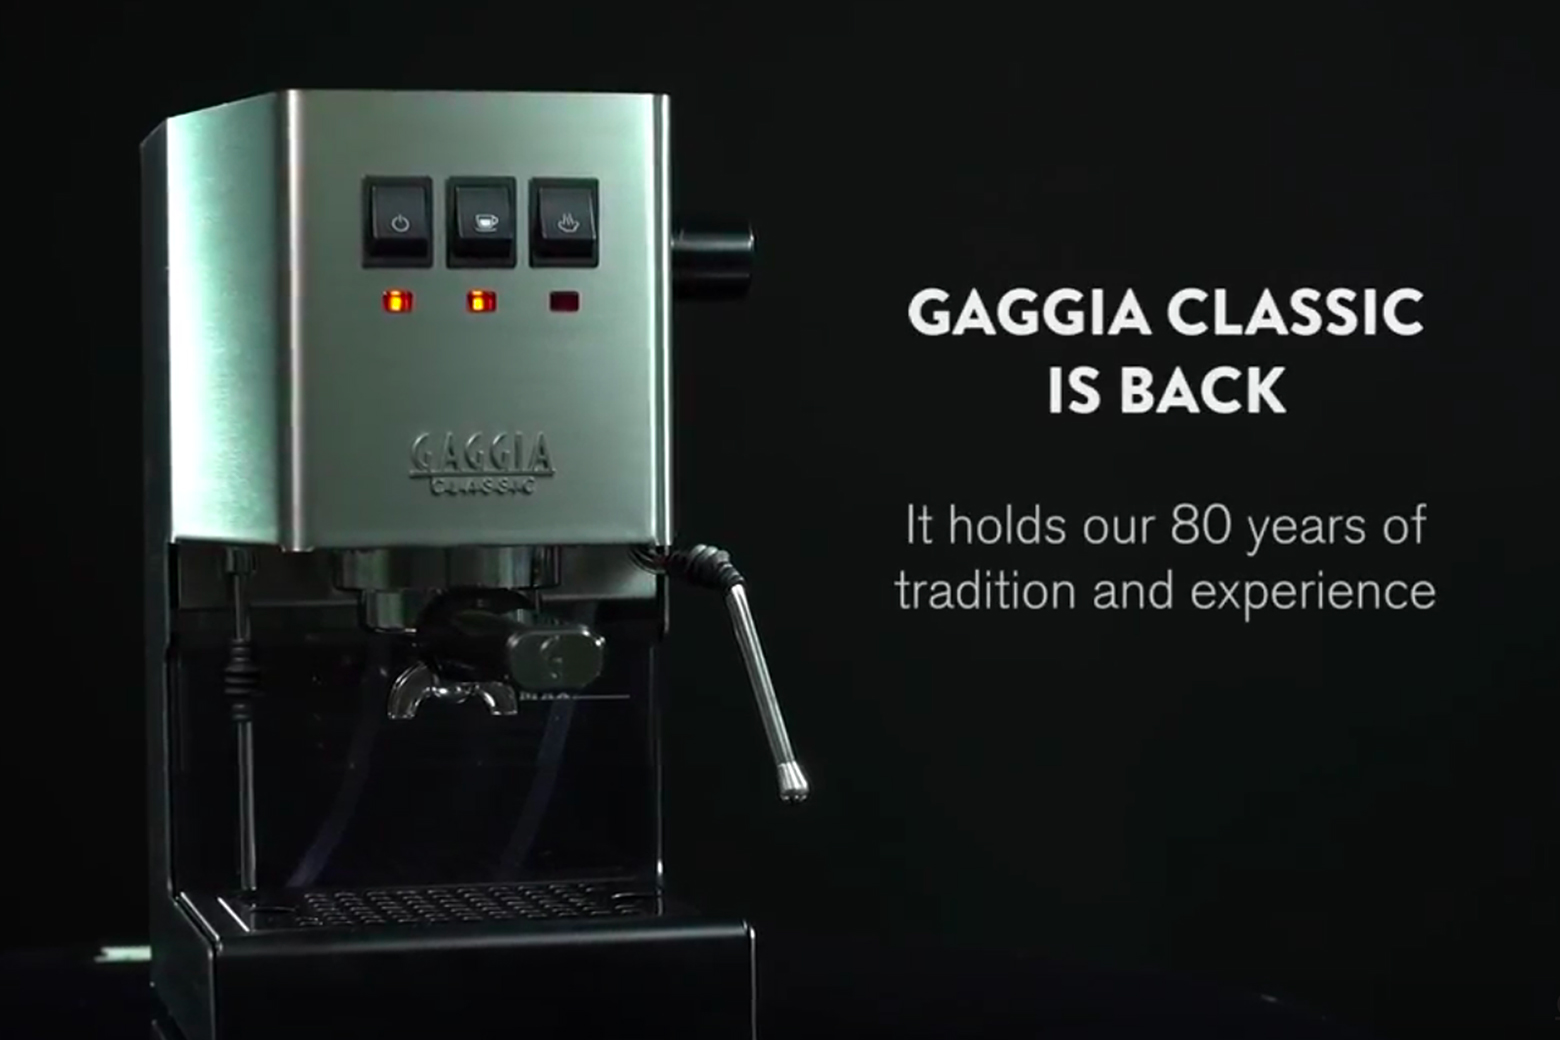 Gaggia Classic Evo Pro - 85th Anniversary Limited Edition